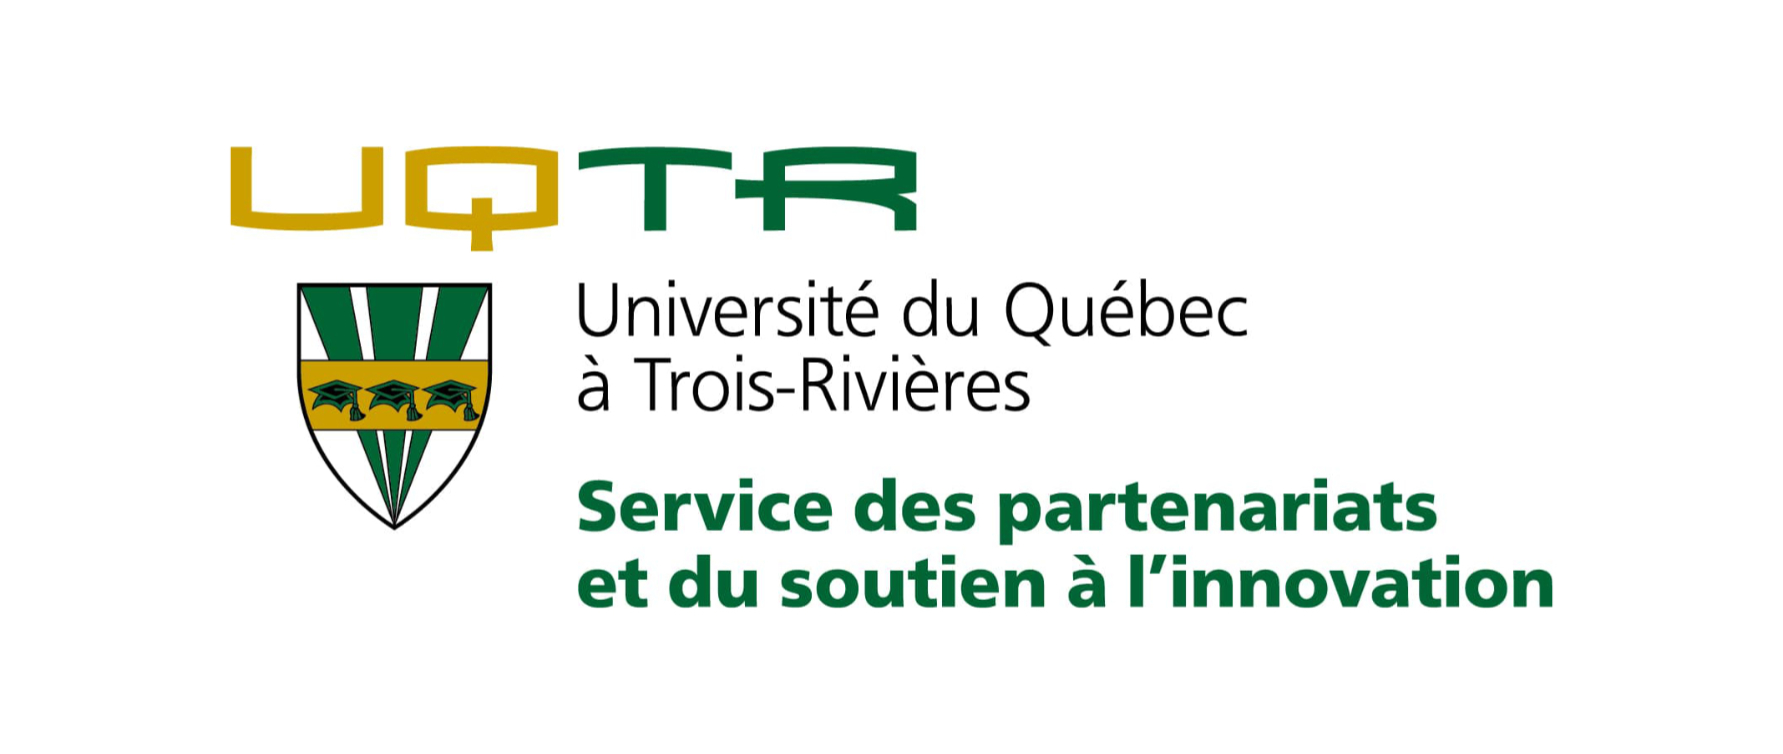 UQTR - Service de partenariats et du soutien à l'innovation